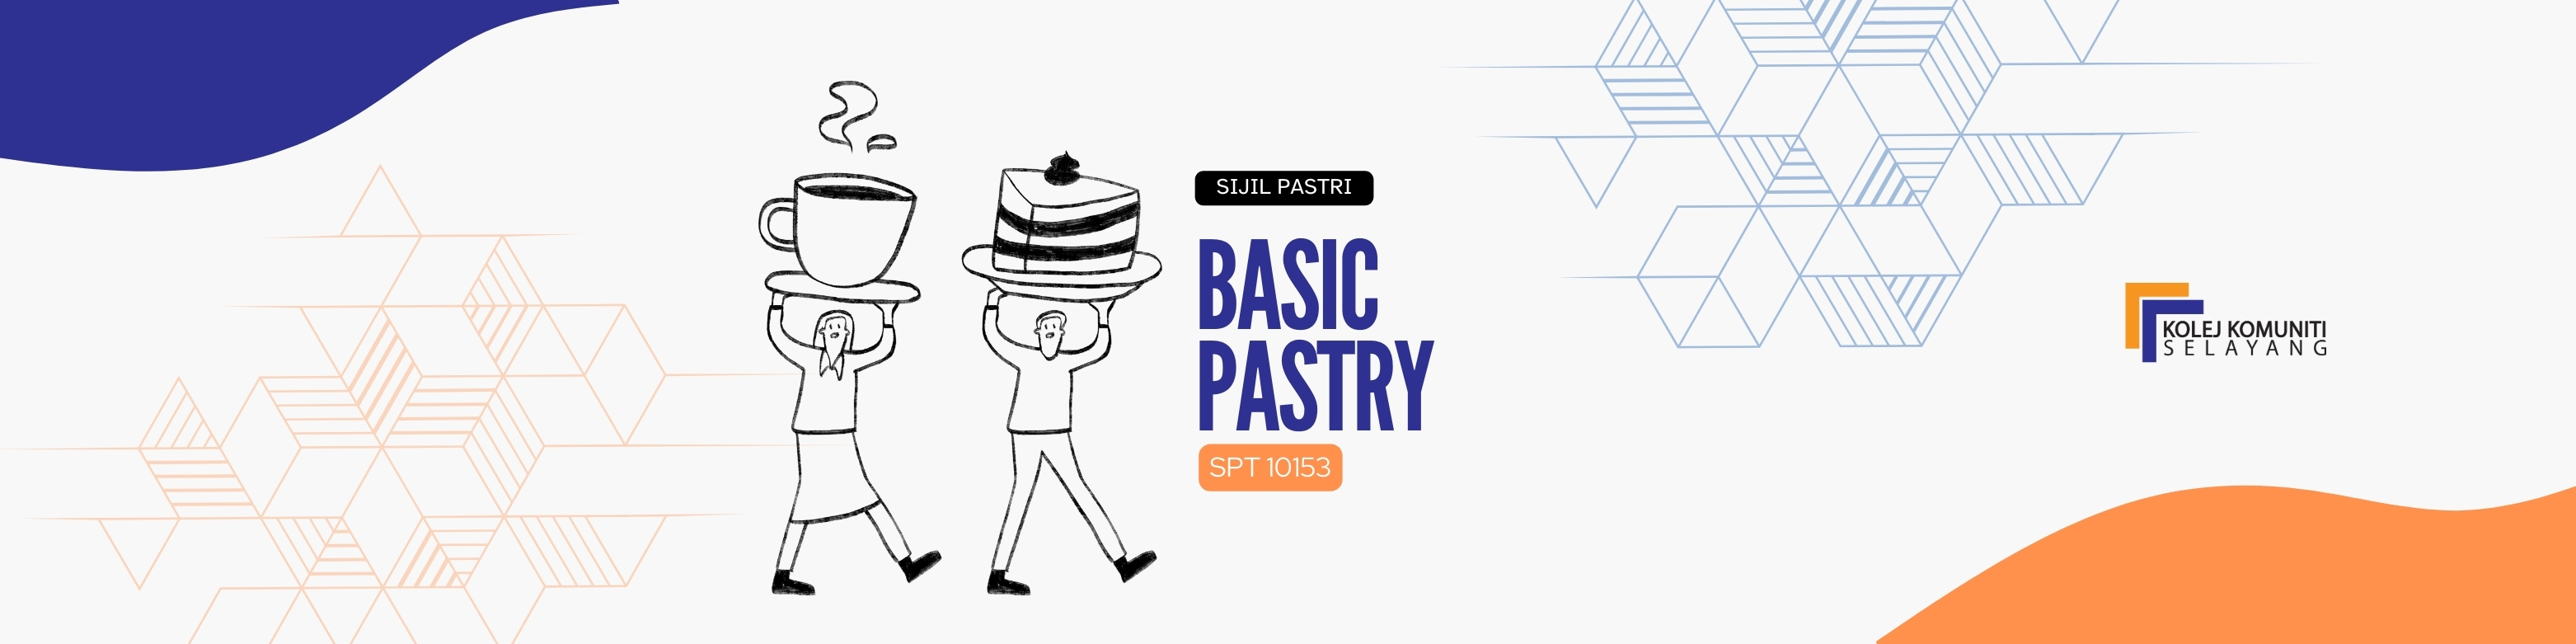 SPT10153 - BASIC PASTRY